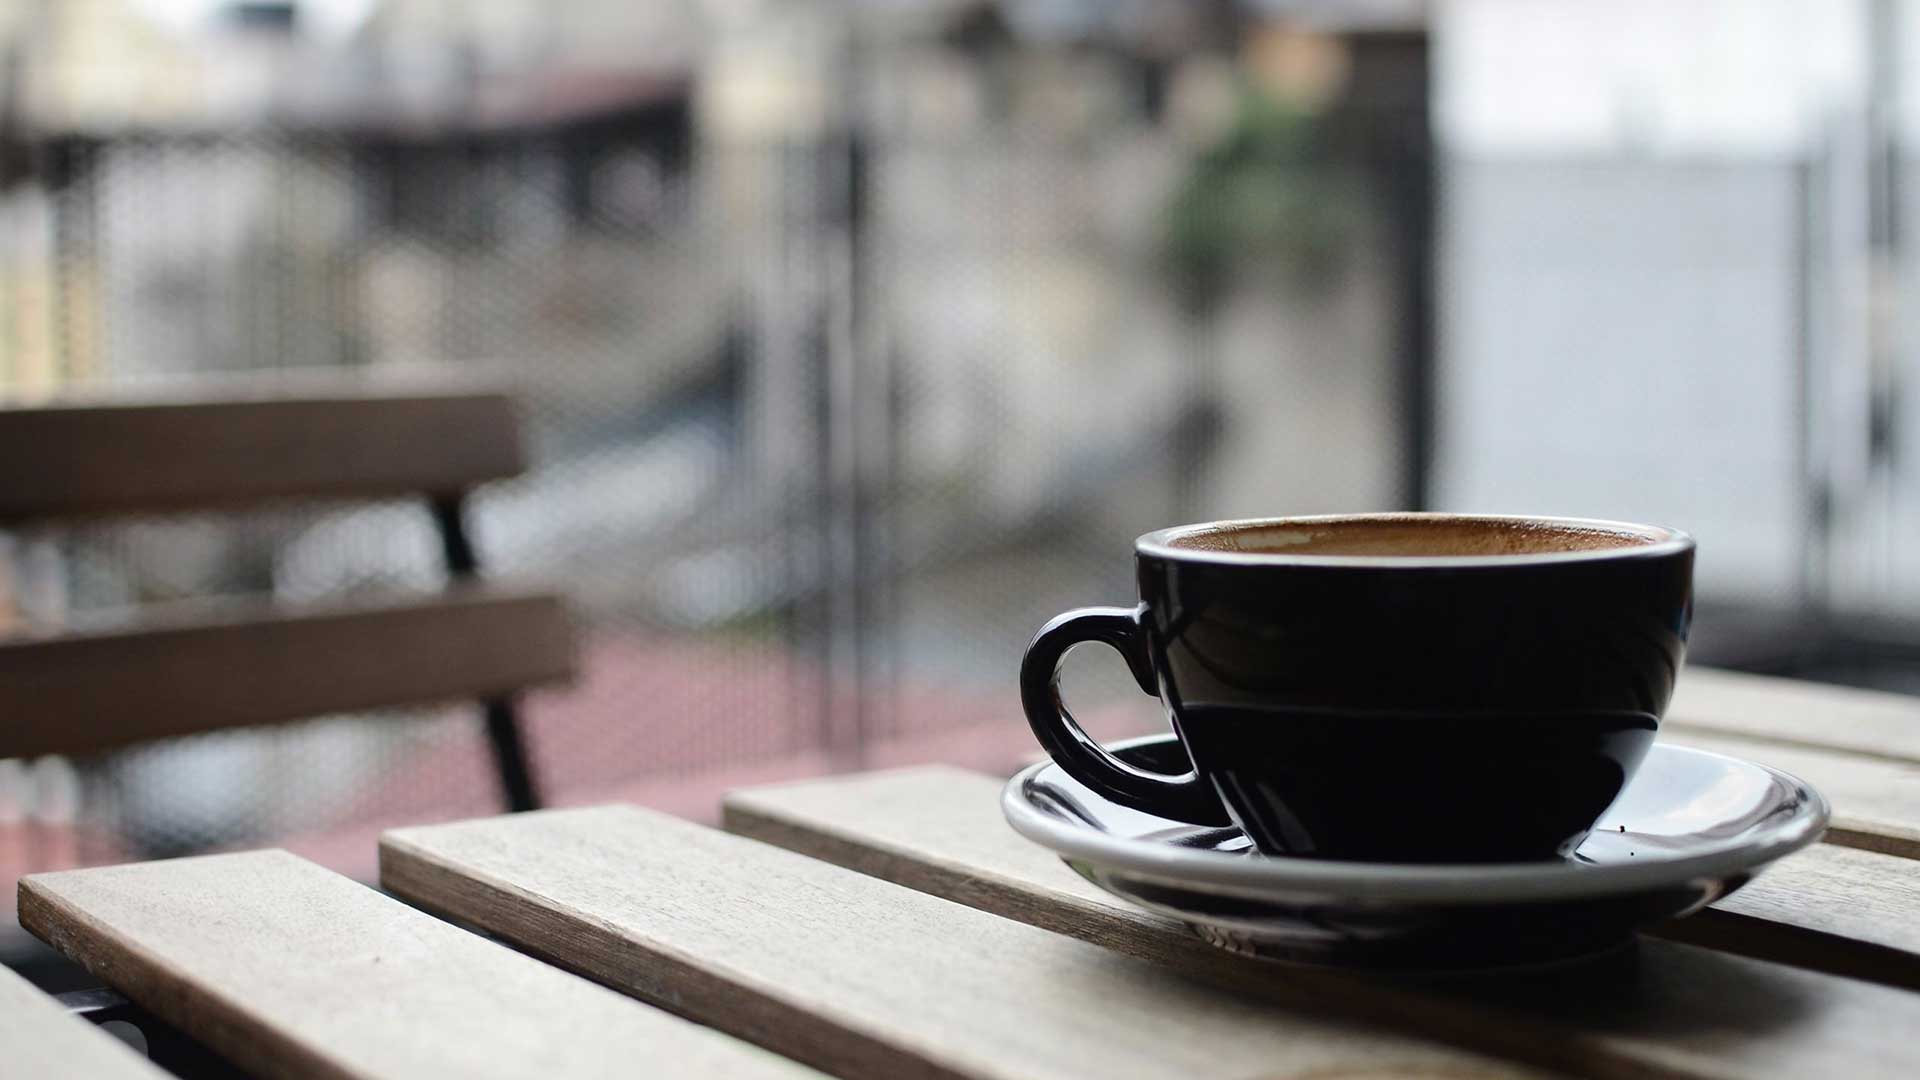 Feondi Channelmanager - Mehr Zeit um Ihren Kaffee zu genießen